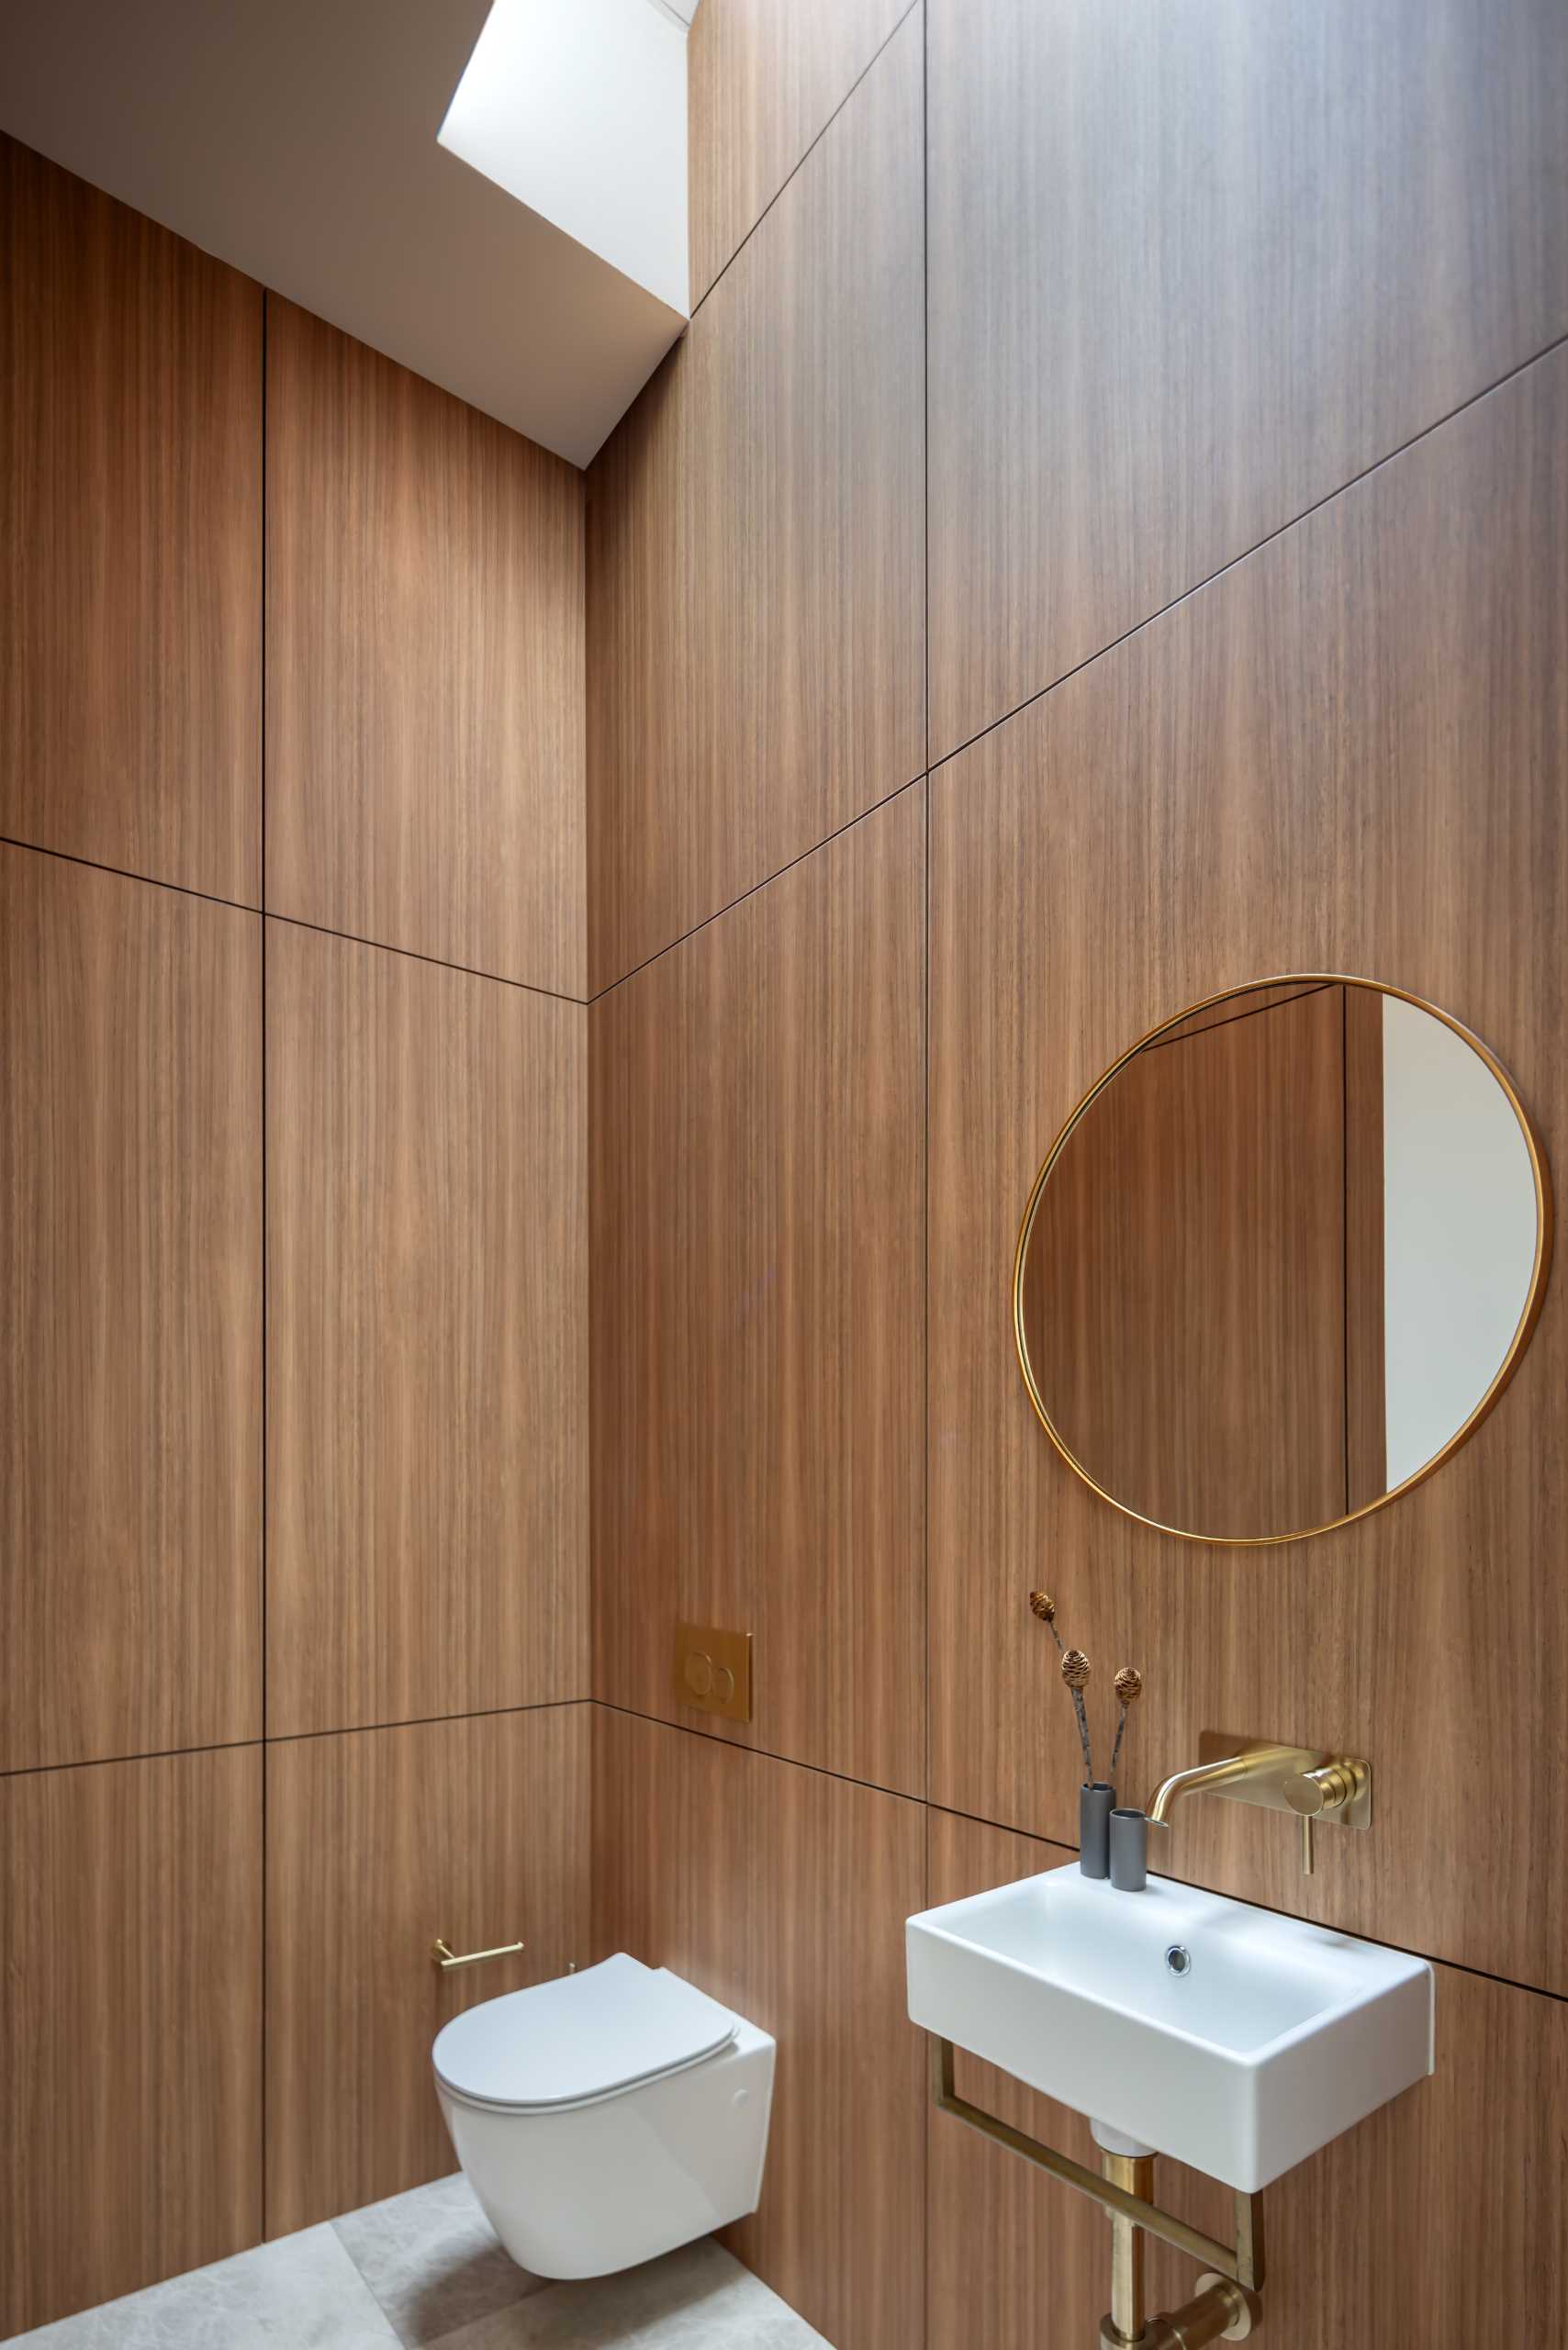 В туалетной комнате деревянные стены от пола до потолка освещены световым люком.